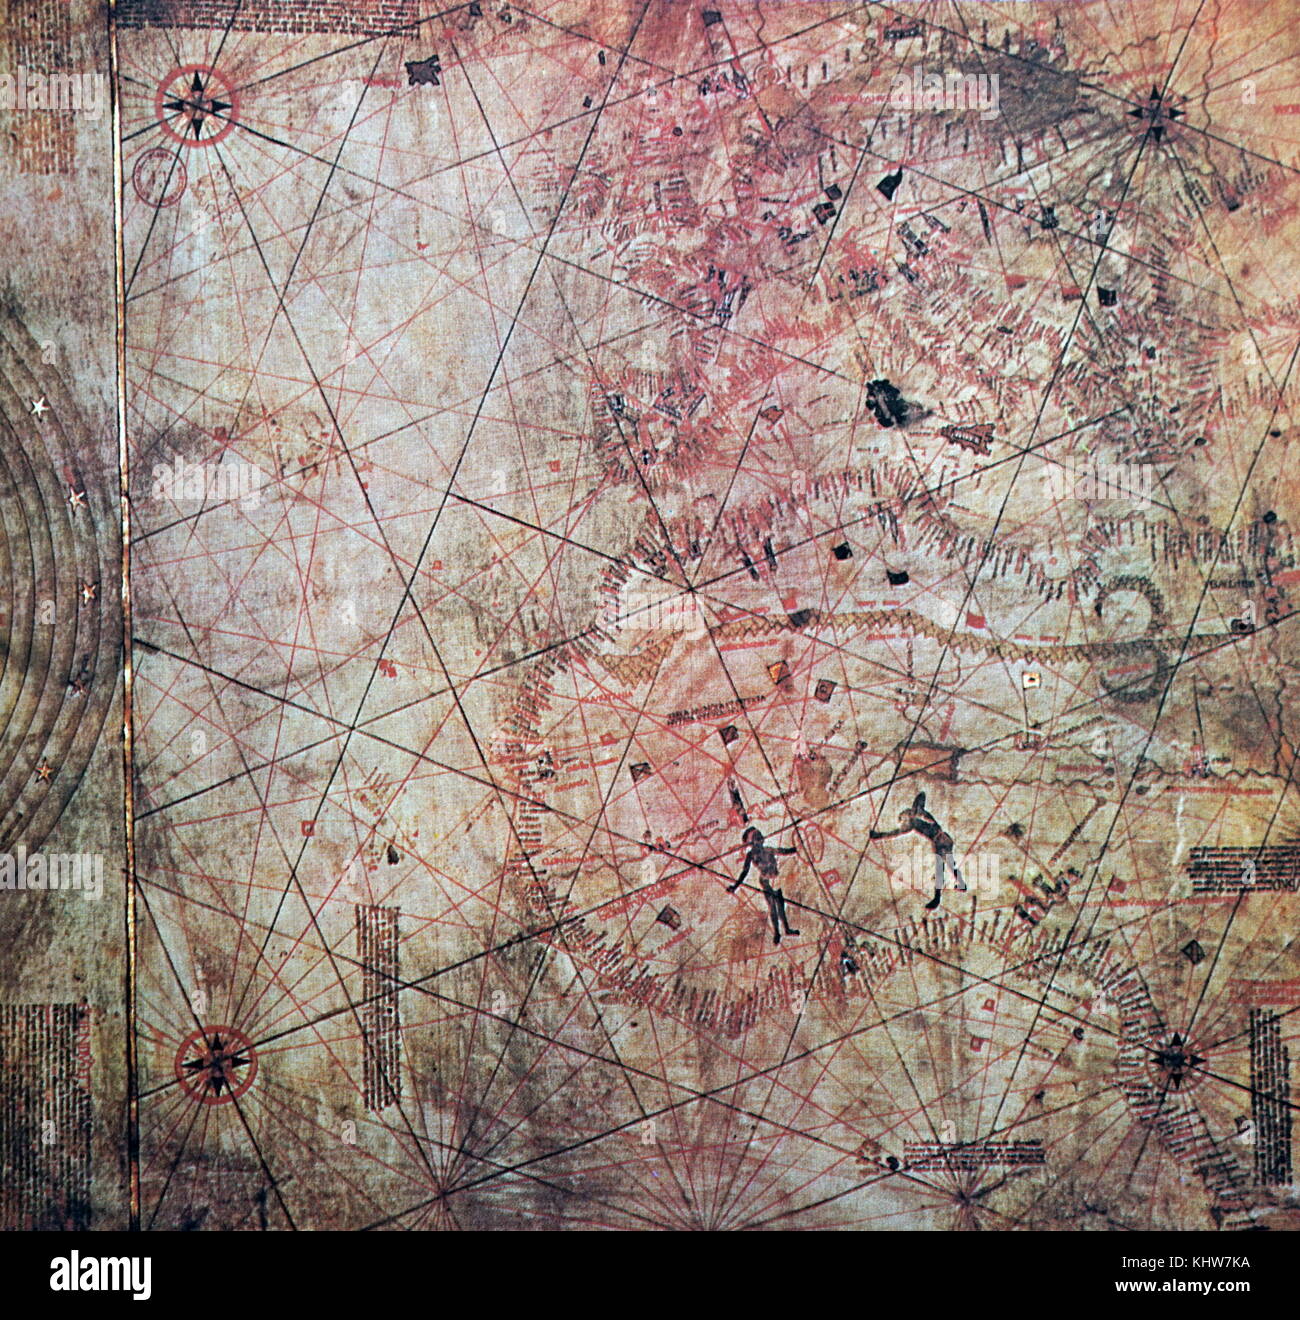 Karte malte auf kalbsleder geglaubt von Christopher Columbus gezogen worden zu sein. Christopher Columbus (1451-1506) eine Italienische Explorer, Navigator und kolonisator. Vom 15. Jahrhundert Stockfoto